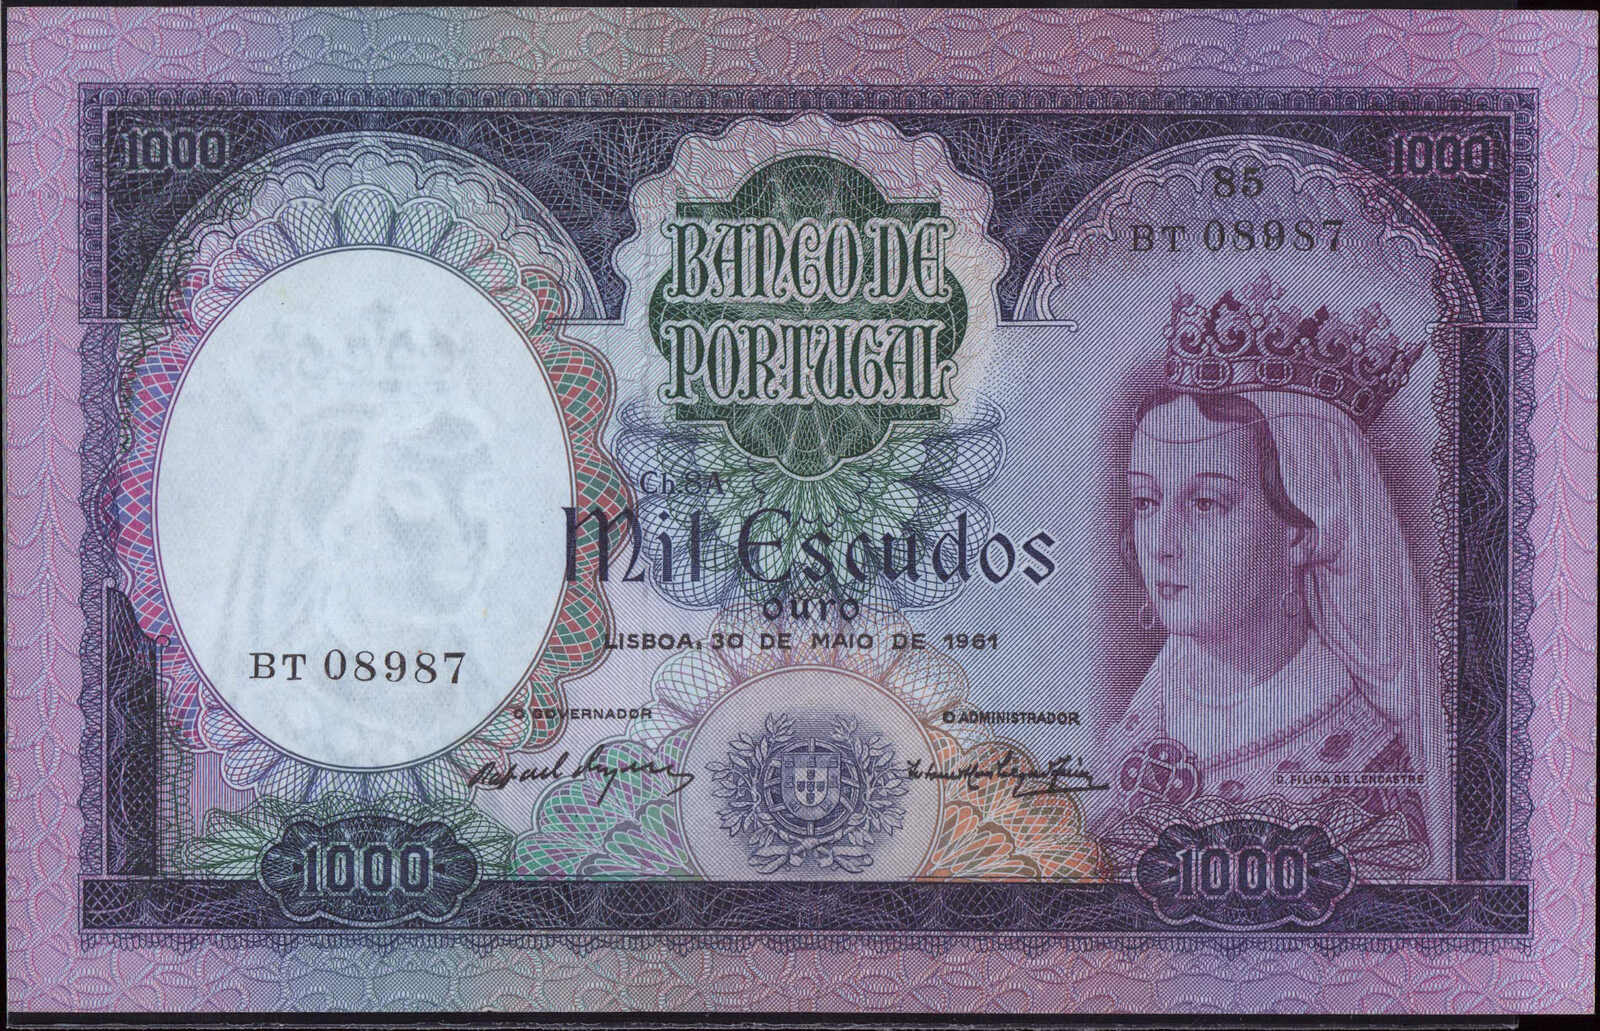 110.390: Billets - Portugal